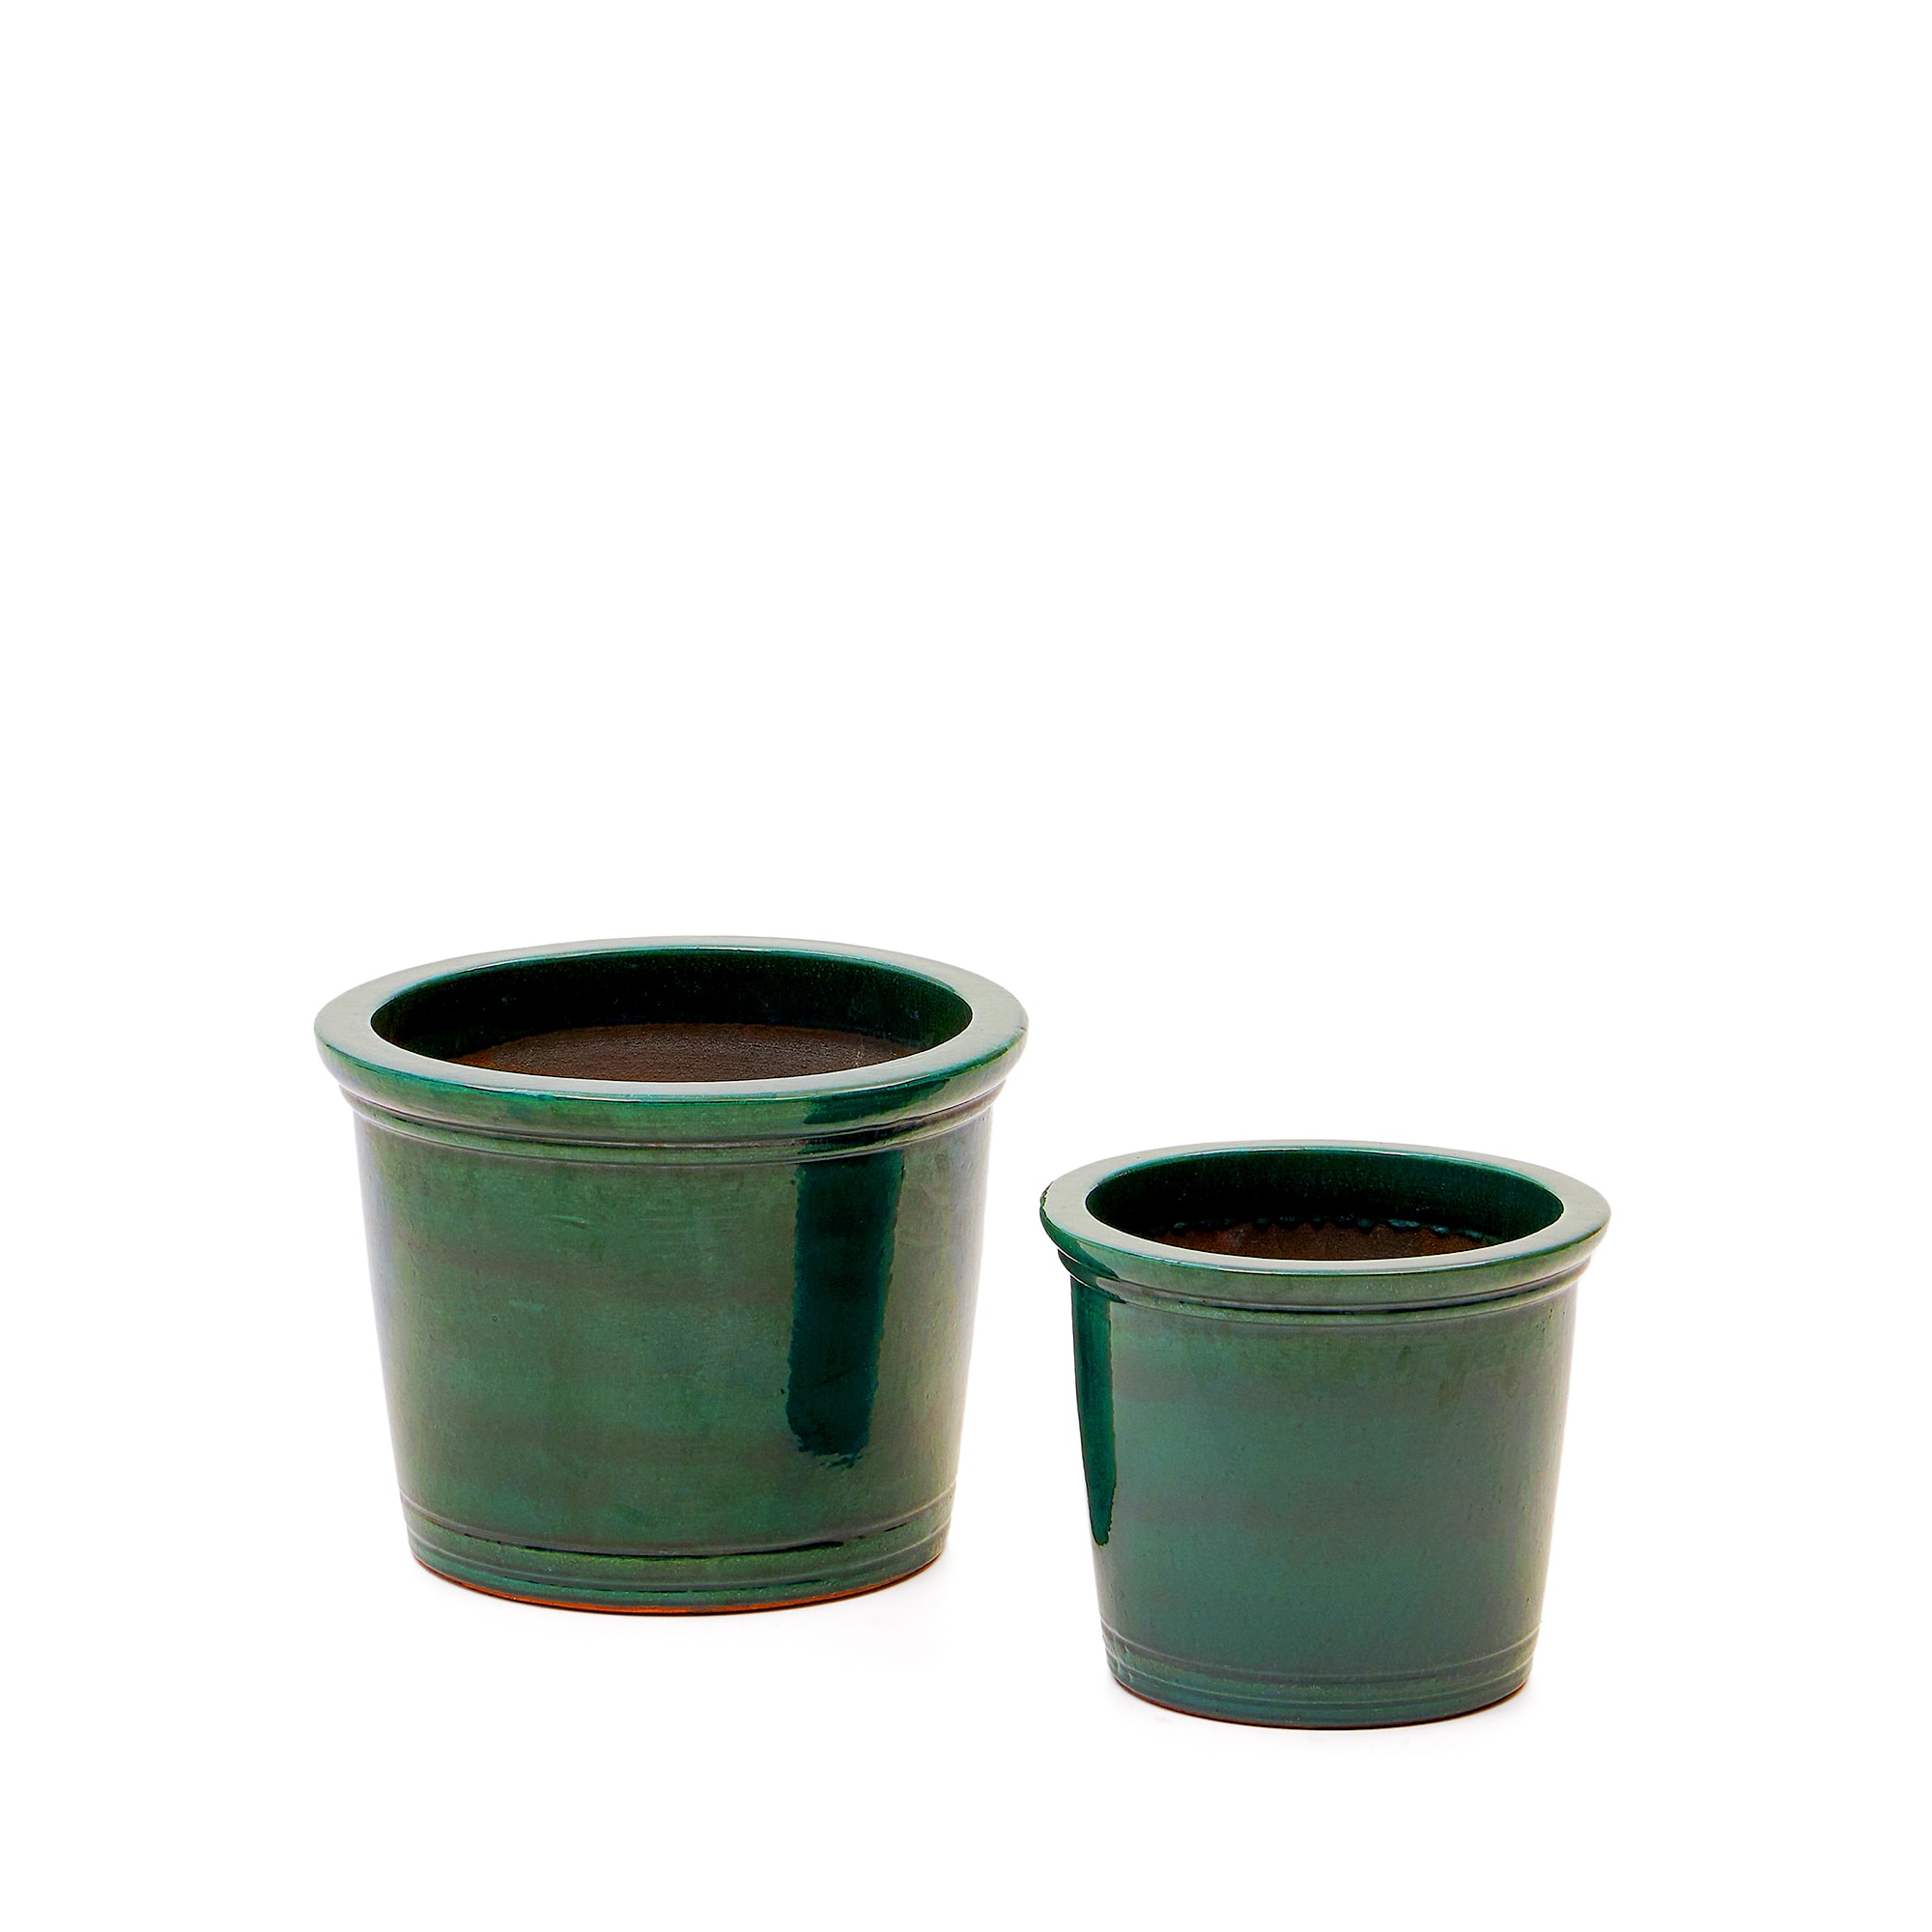 LAFORMA Presili udendørs krukke, rund – grøn glaseret keramik (sæt med 2)